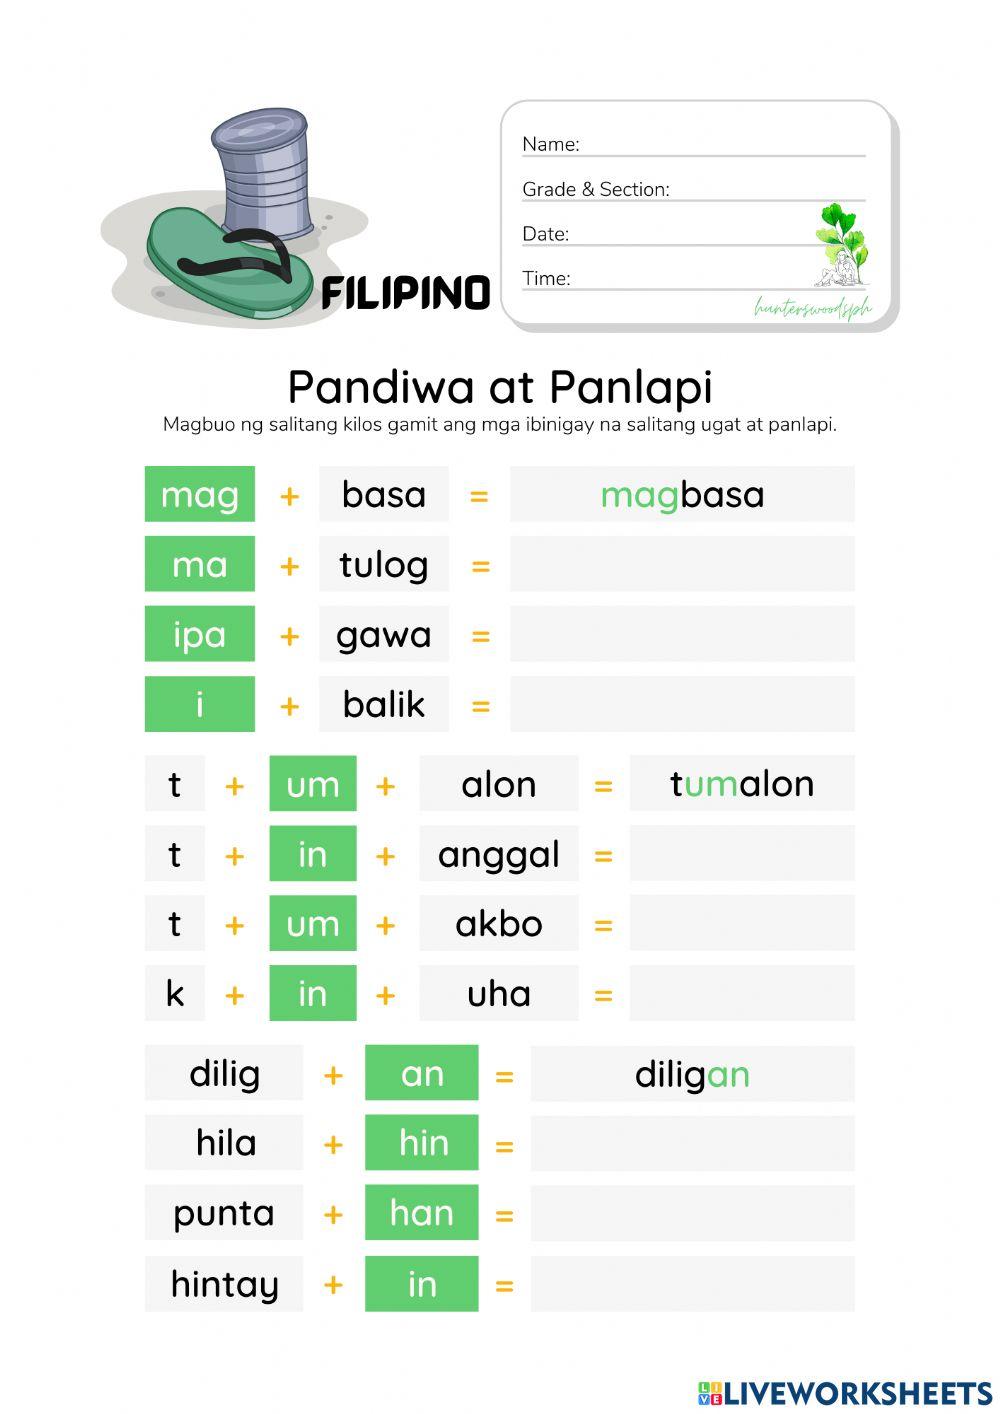 Pandiwa - Pagbuo ng Salitang Kilos Gamit ang mga Panlapi (HuntersWoodsPH Filipino)